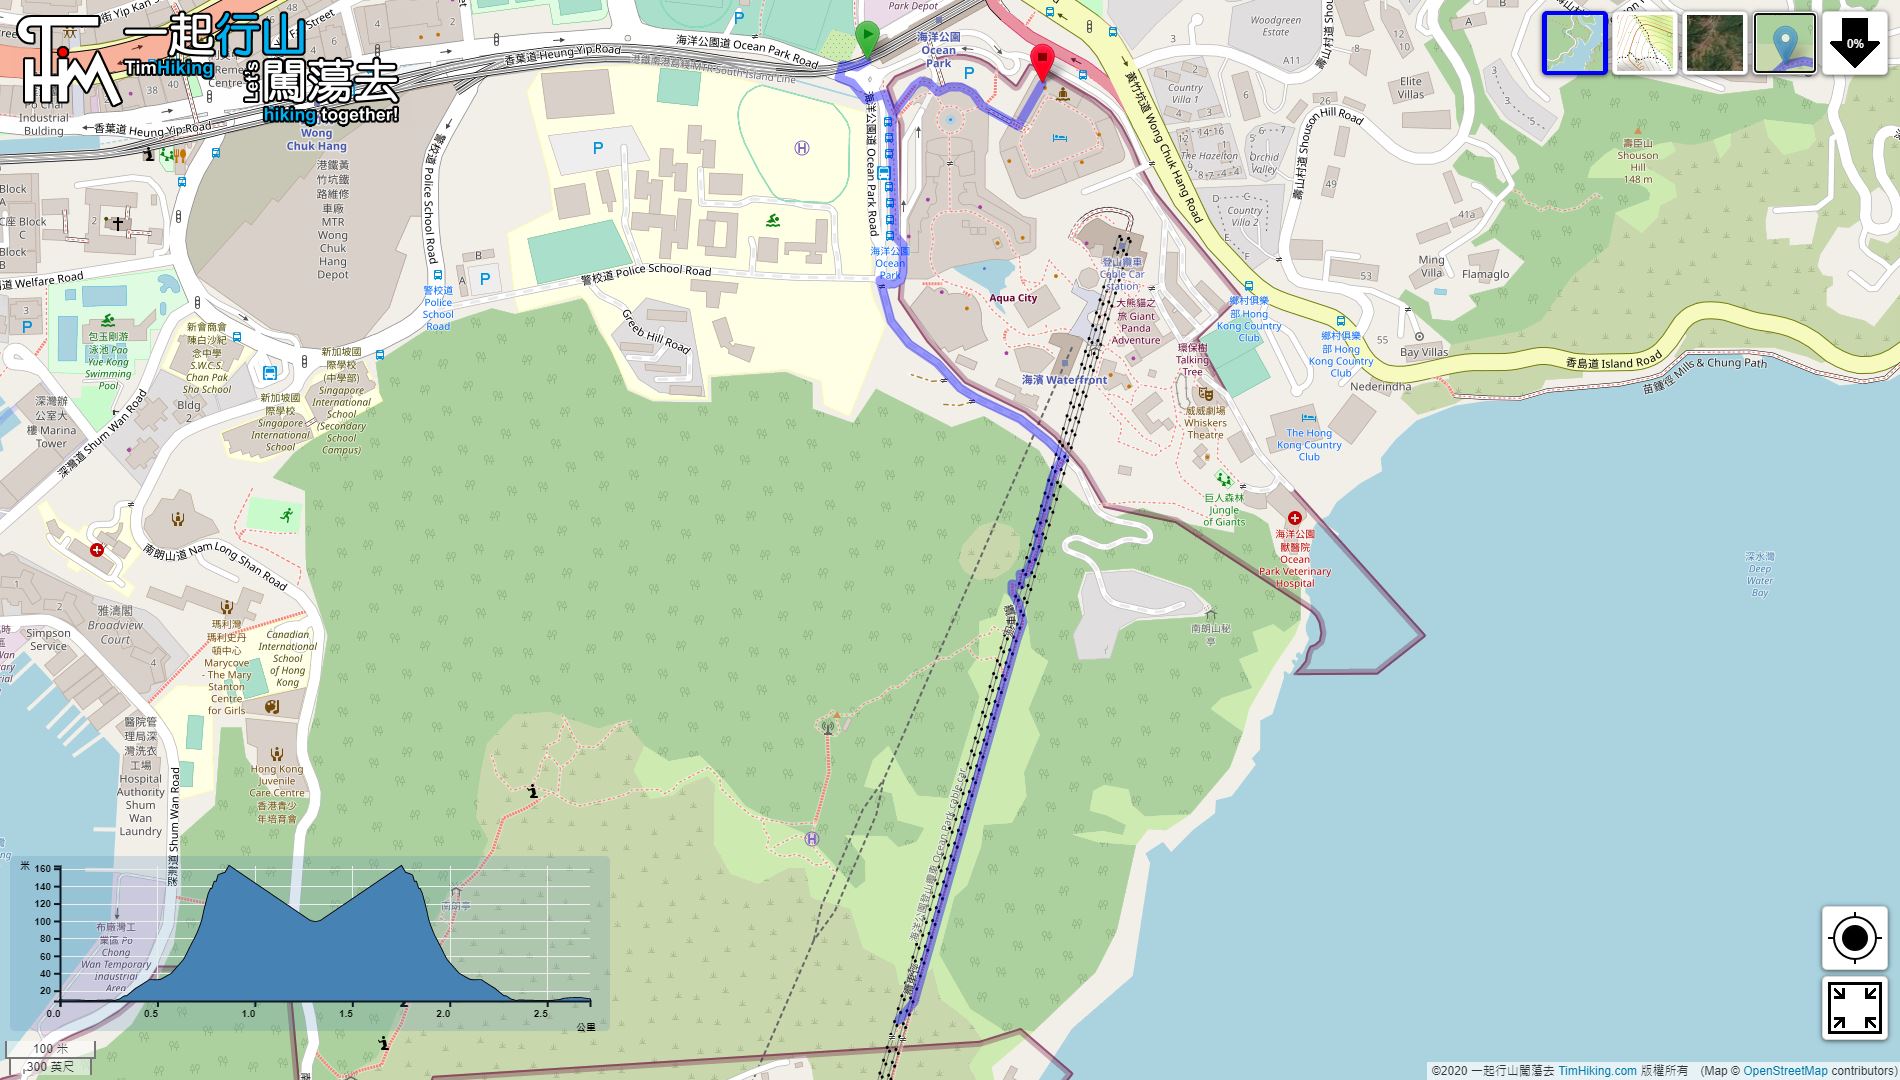 “海洋公园缆车救援径”路线地图